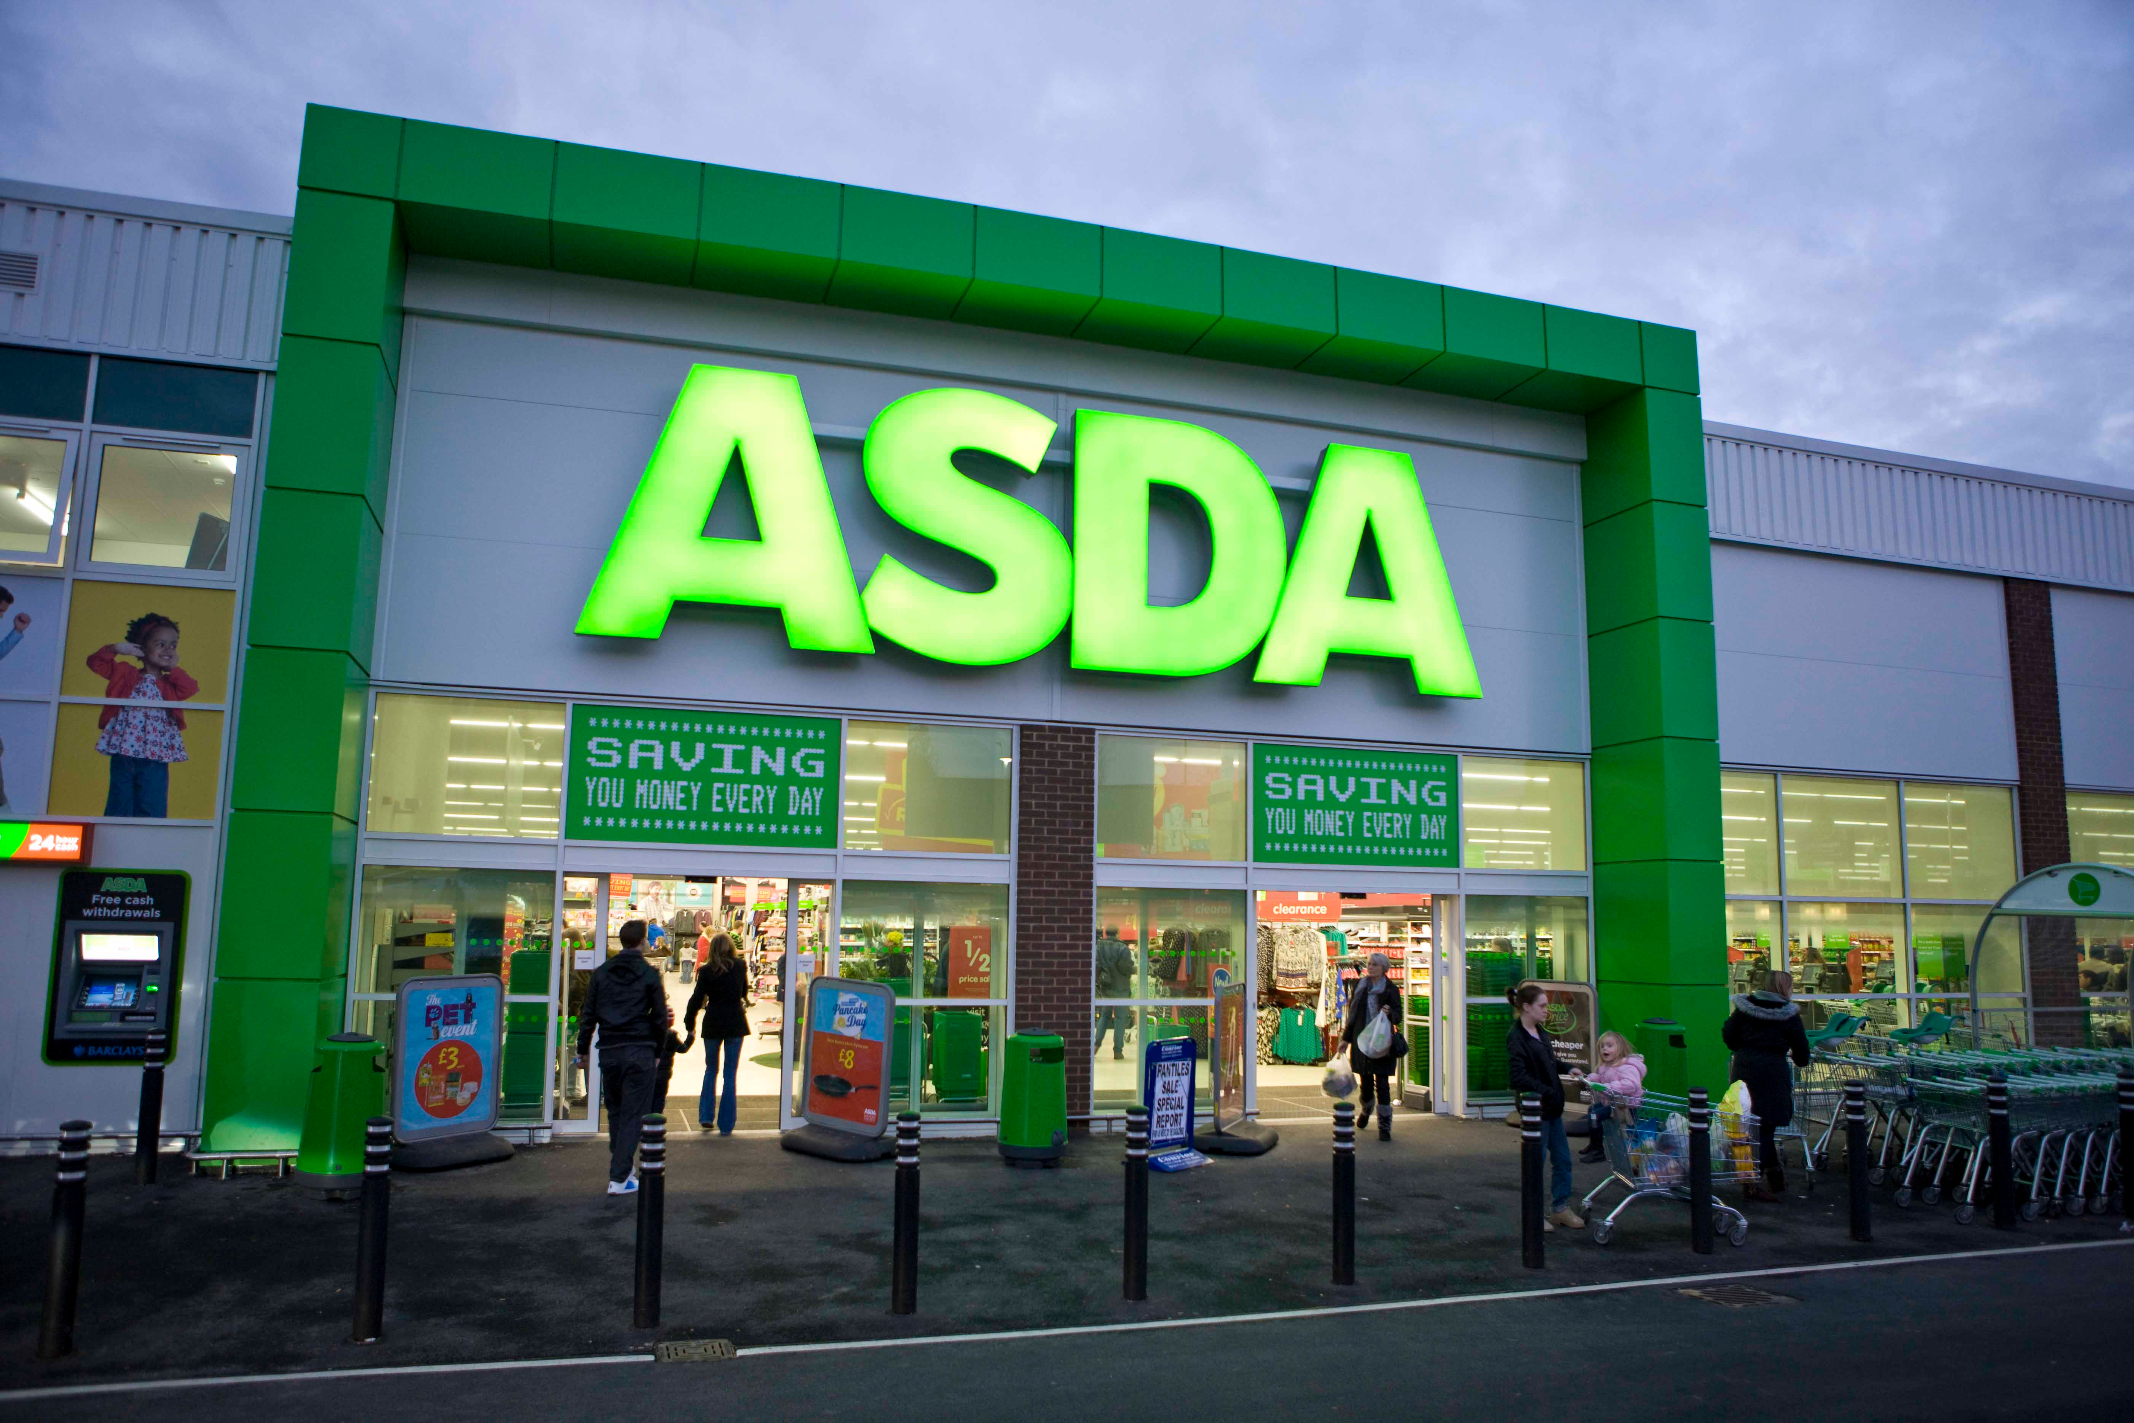 英国asda是沃尔玛旗下连锁零售超市